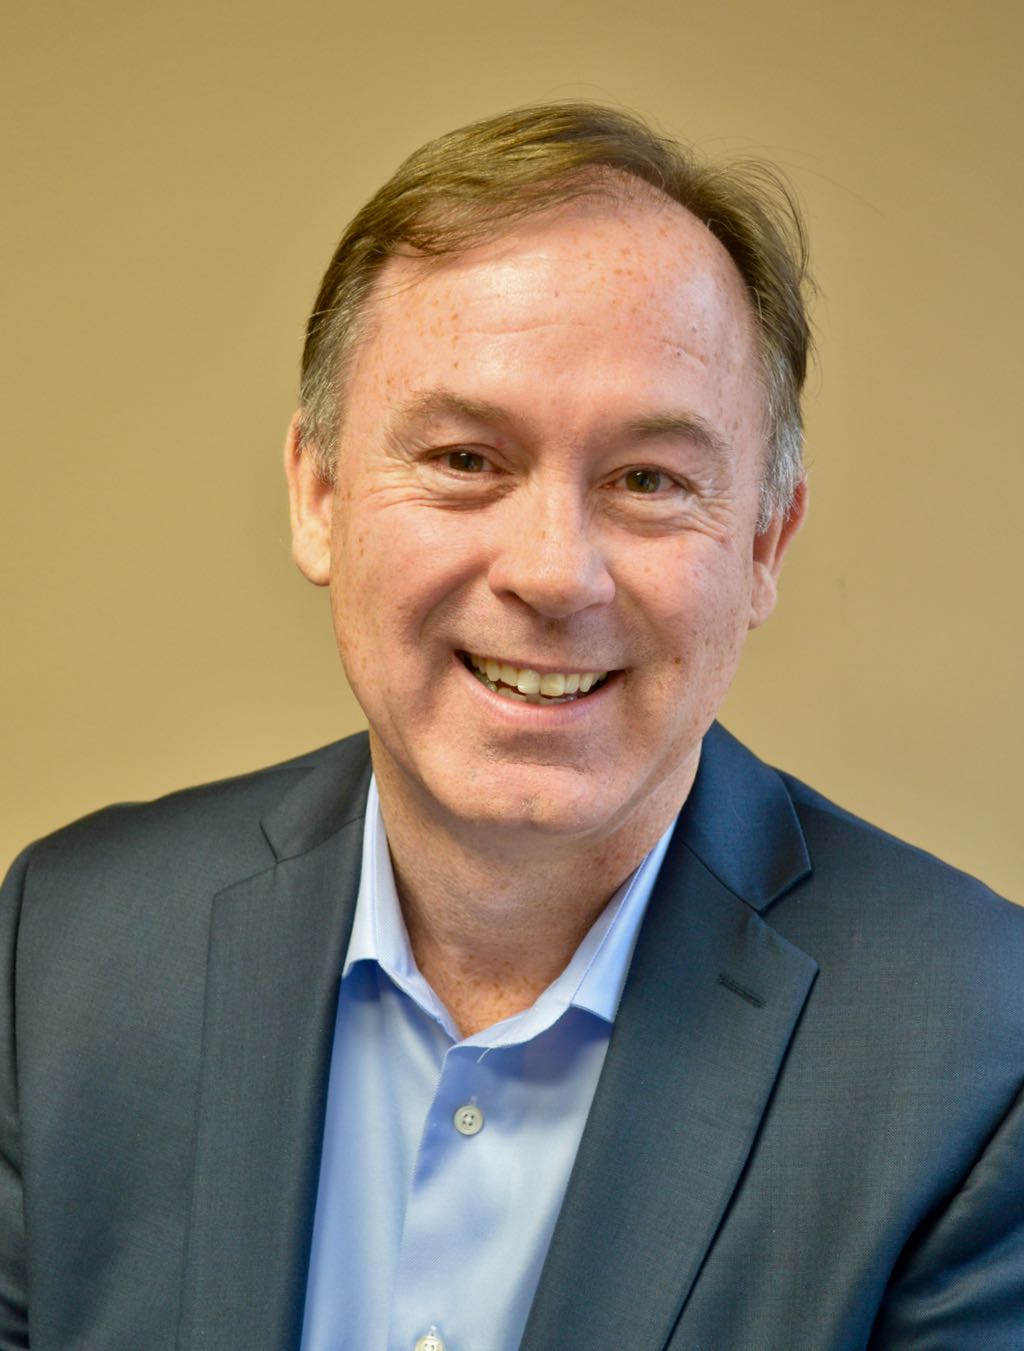 Fred Franchuk, Co-Owner, Managing Partner